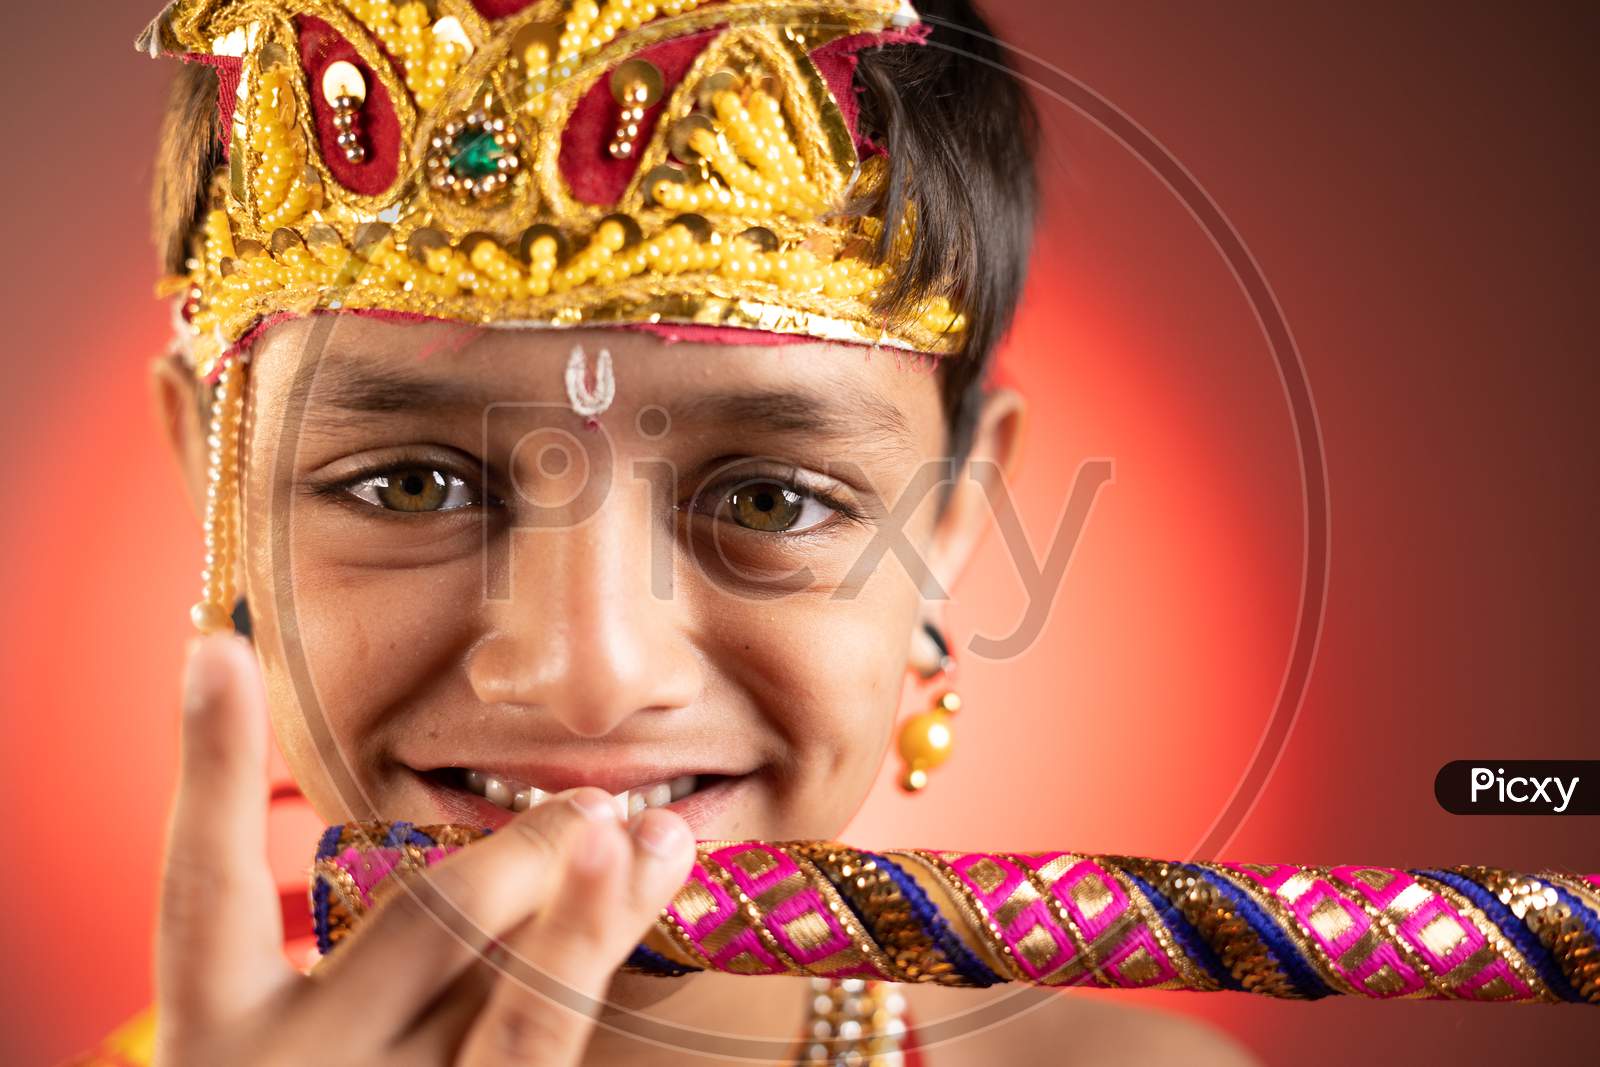 Kanha/Krishna Dress for Boys - Design# B-KSN# 704